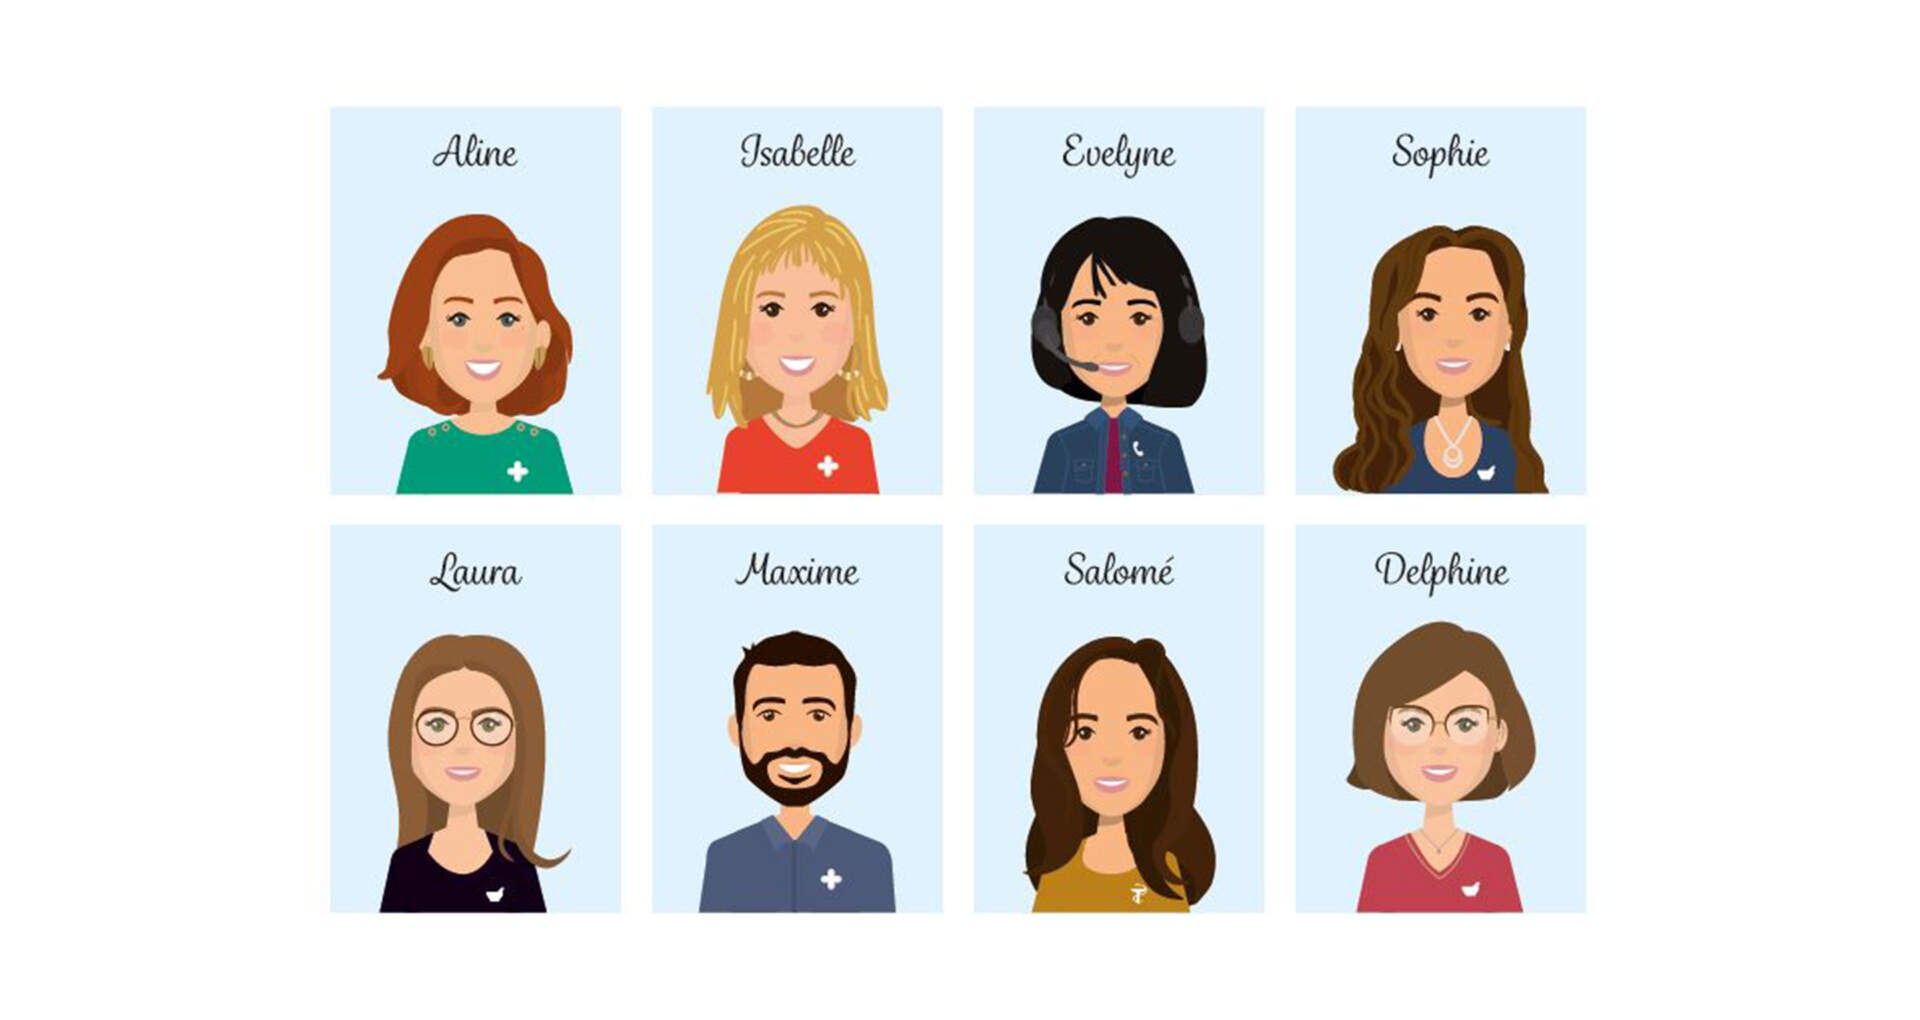 Image de huit avatars de collaborateurs d'une pharmacie avec leur nom inscrit en haut de leur tête.